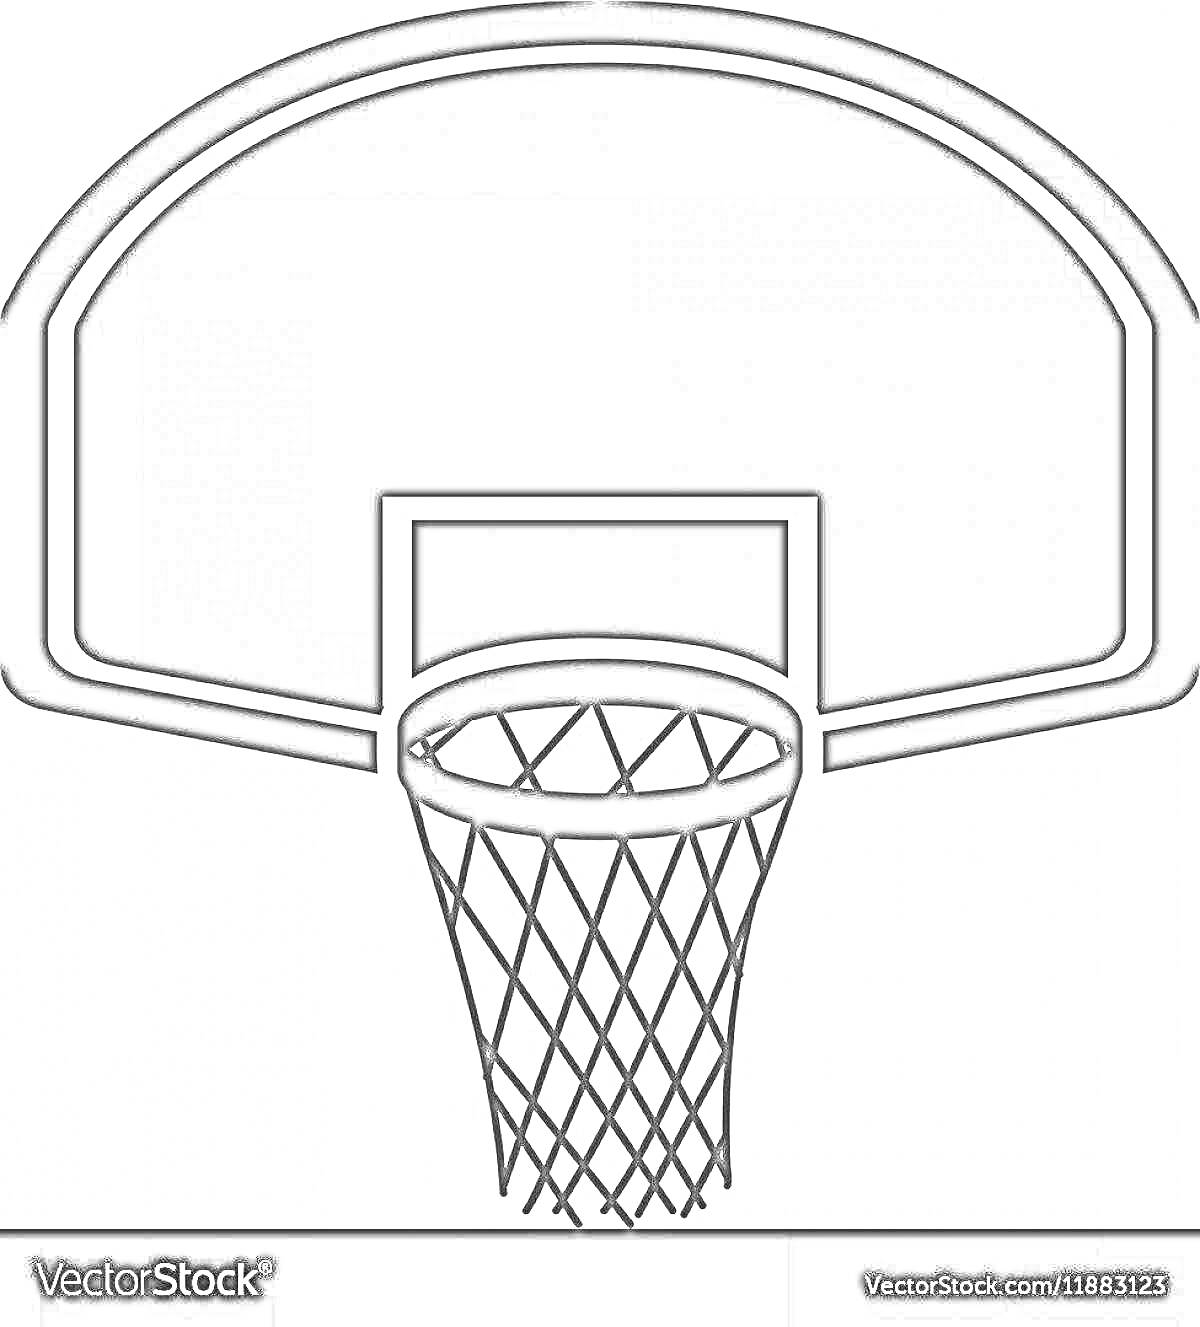 Раскраска Баскетбольное кольцо с сеткой и щитом